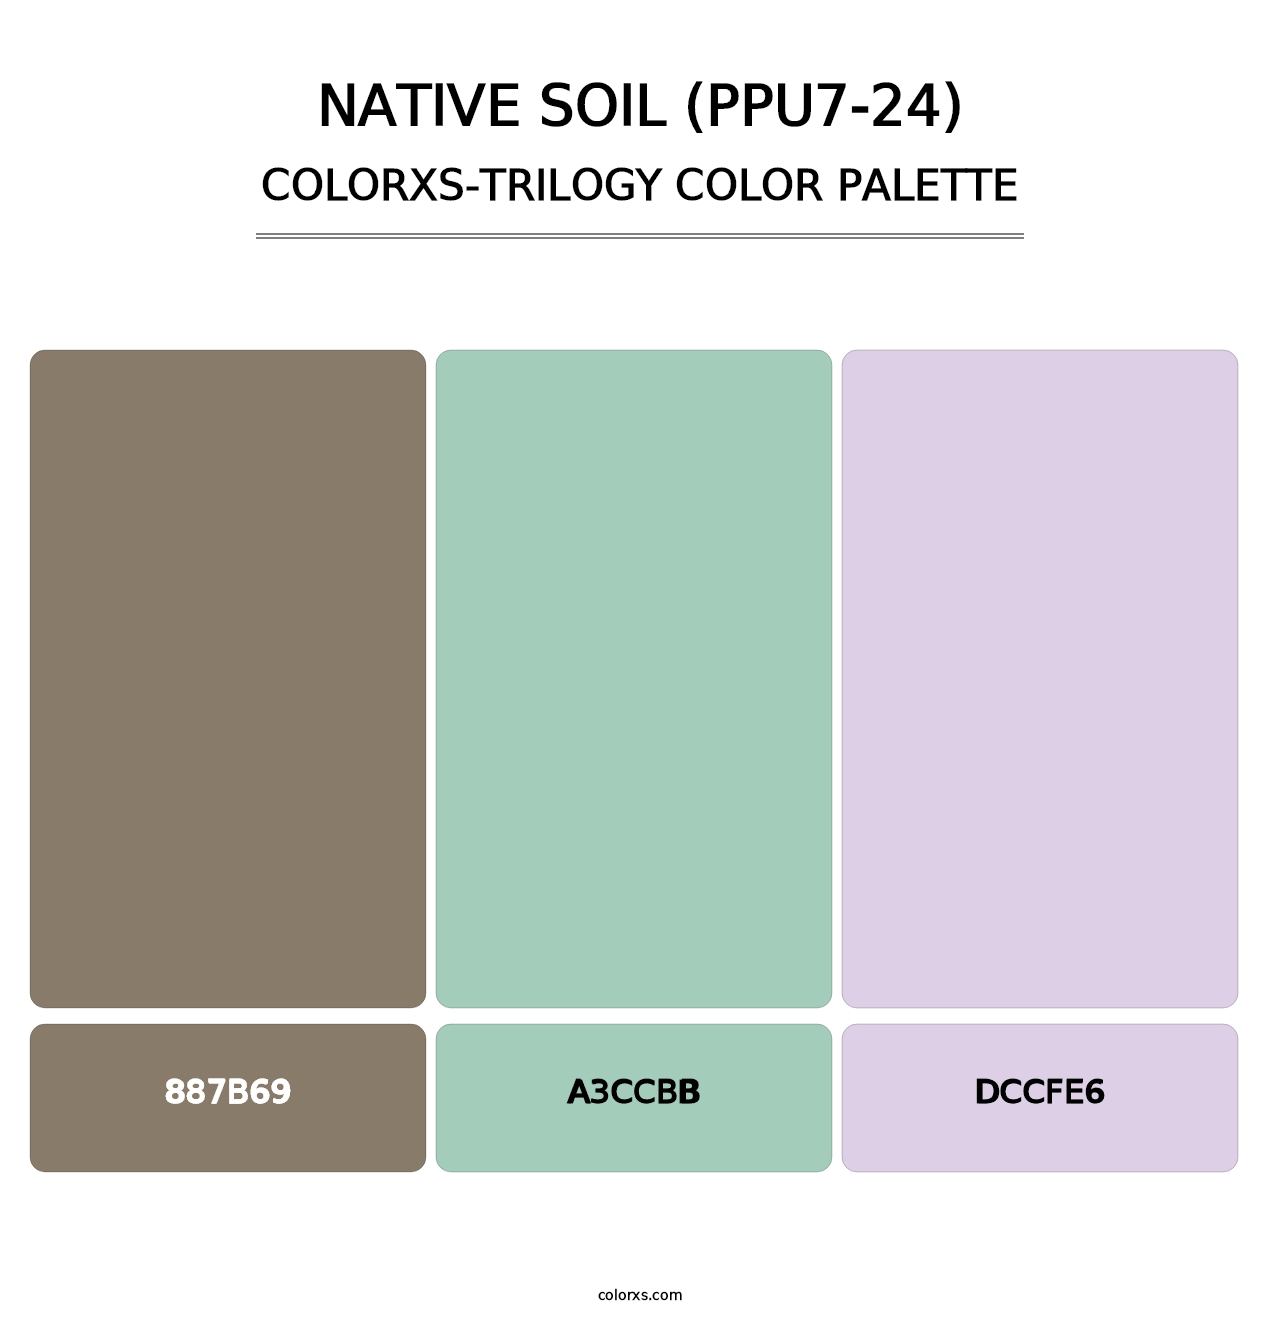 Native Soil (PPU7-24) - Colorxs Trilogy Palette